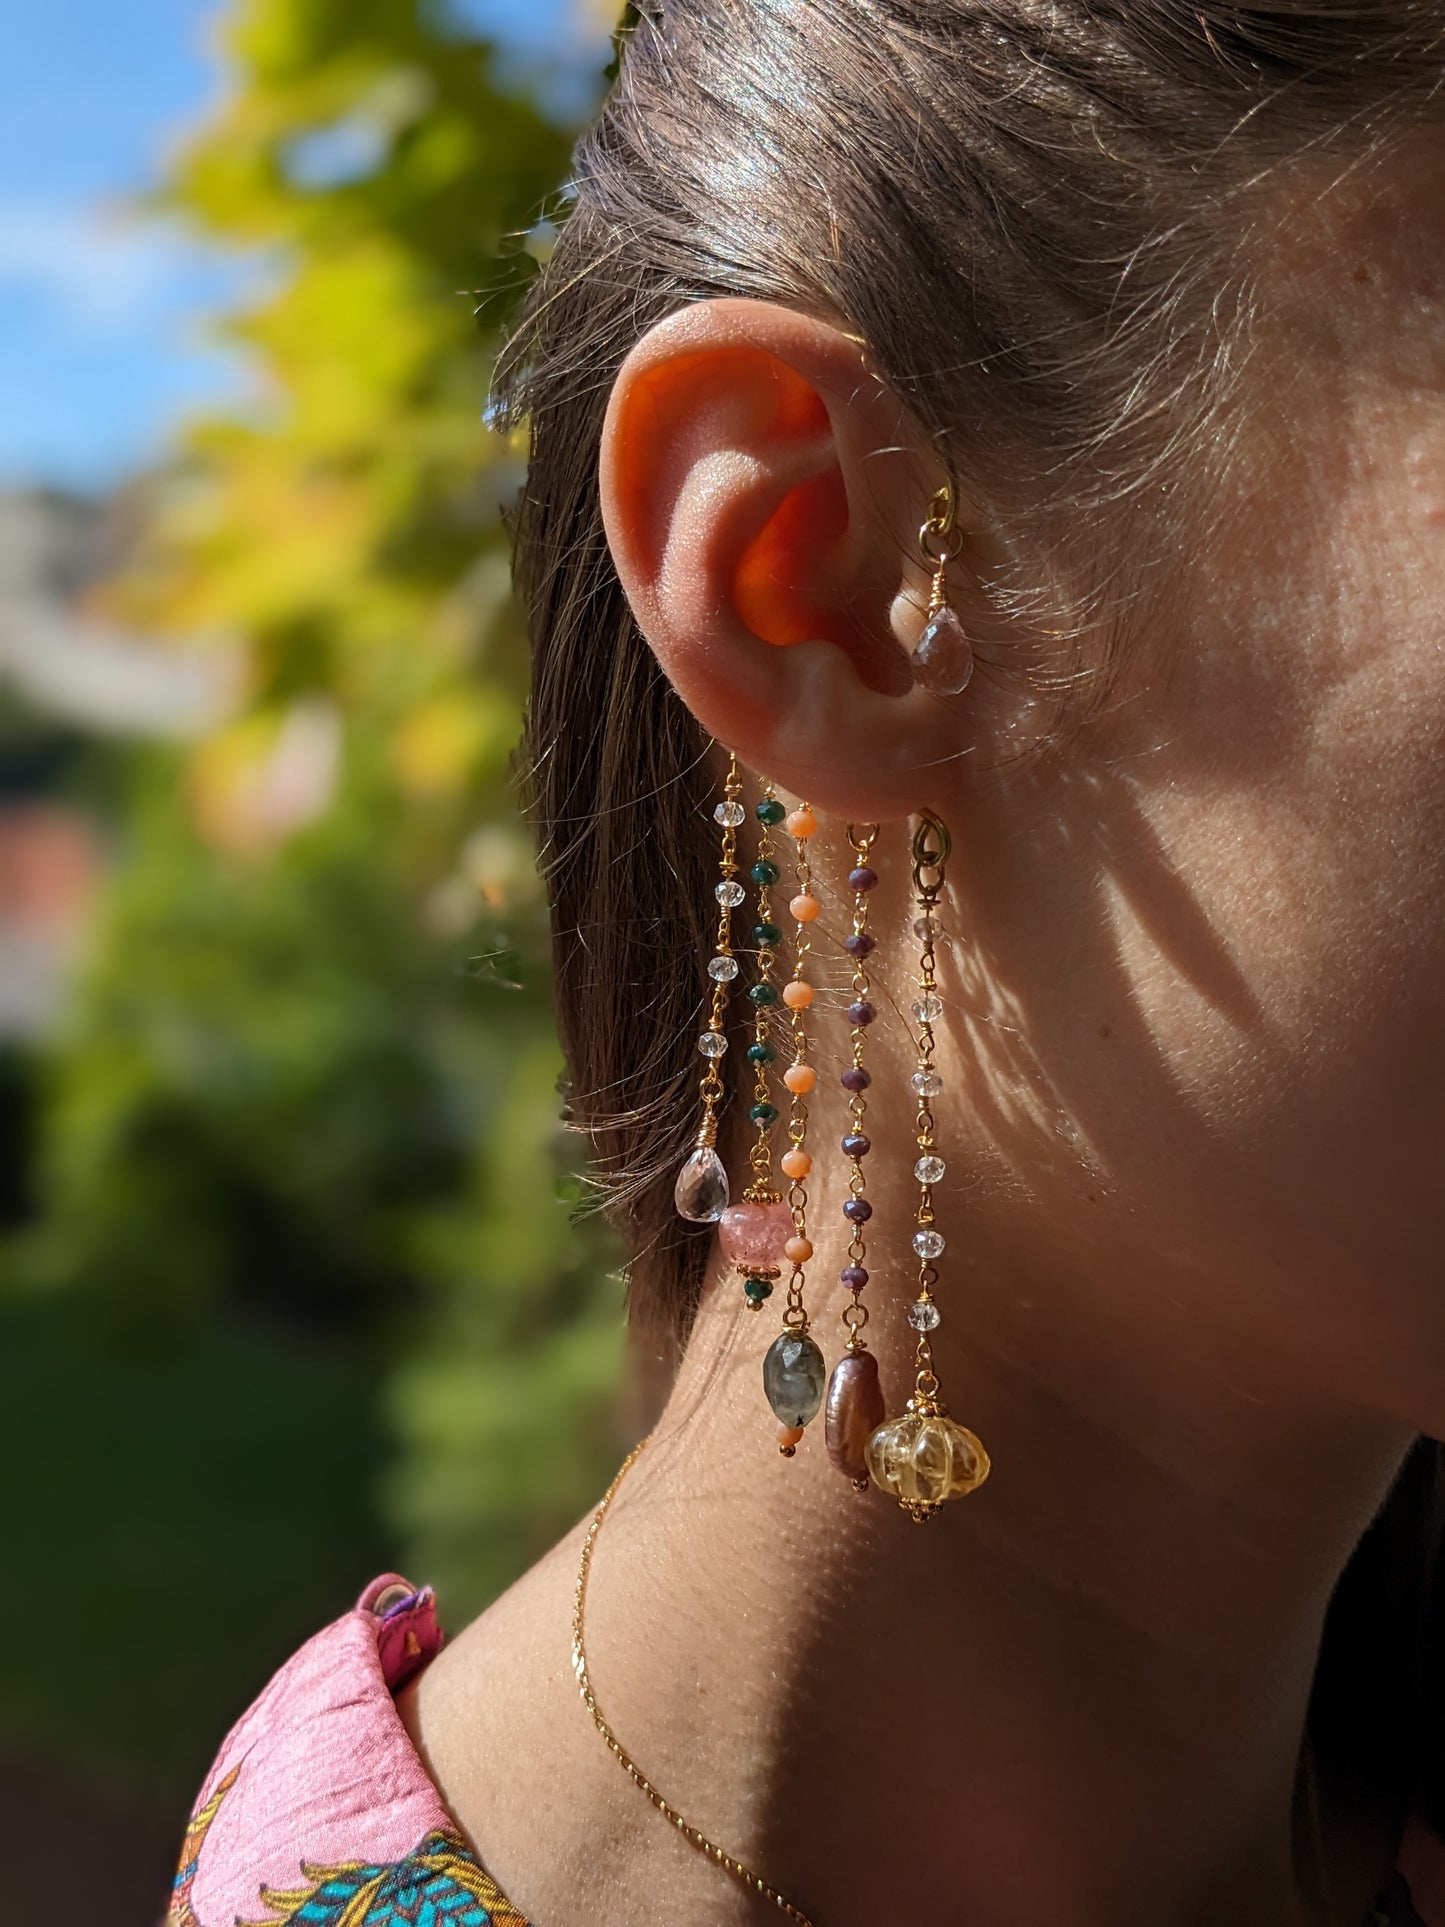 Une paire de boucles d'oreilles pendantes 'Kalamkari', magnifiquement ornées de pierres précieuses colorées comme la briolette améthyste lavande, le quartz fraise, un nuage de labradorite, des perles keshi et la citrine sculptée, reflétant le charme artisanal unique de Jaipur.